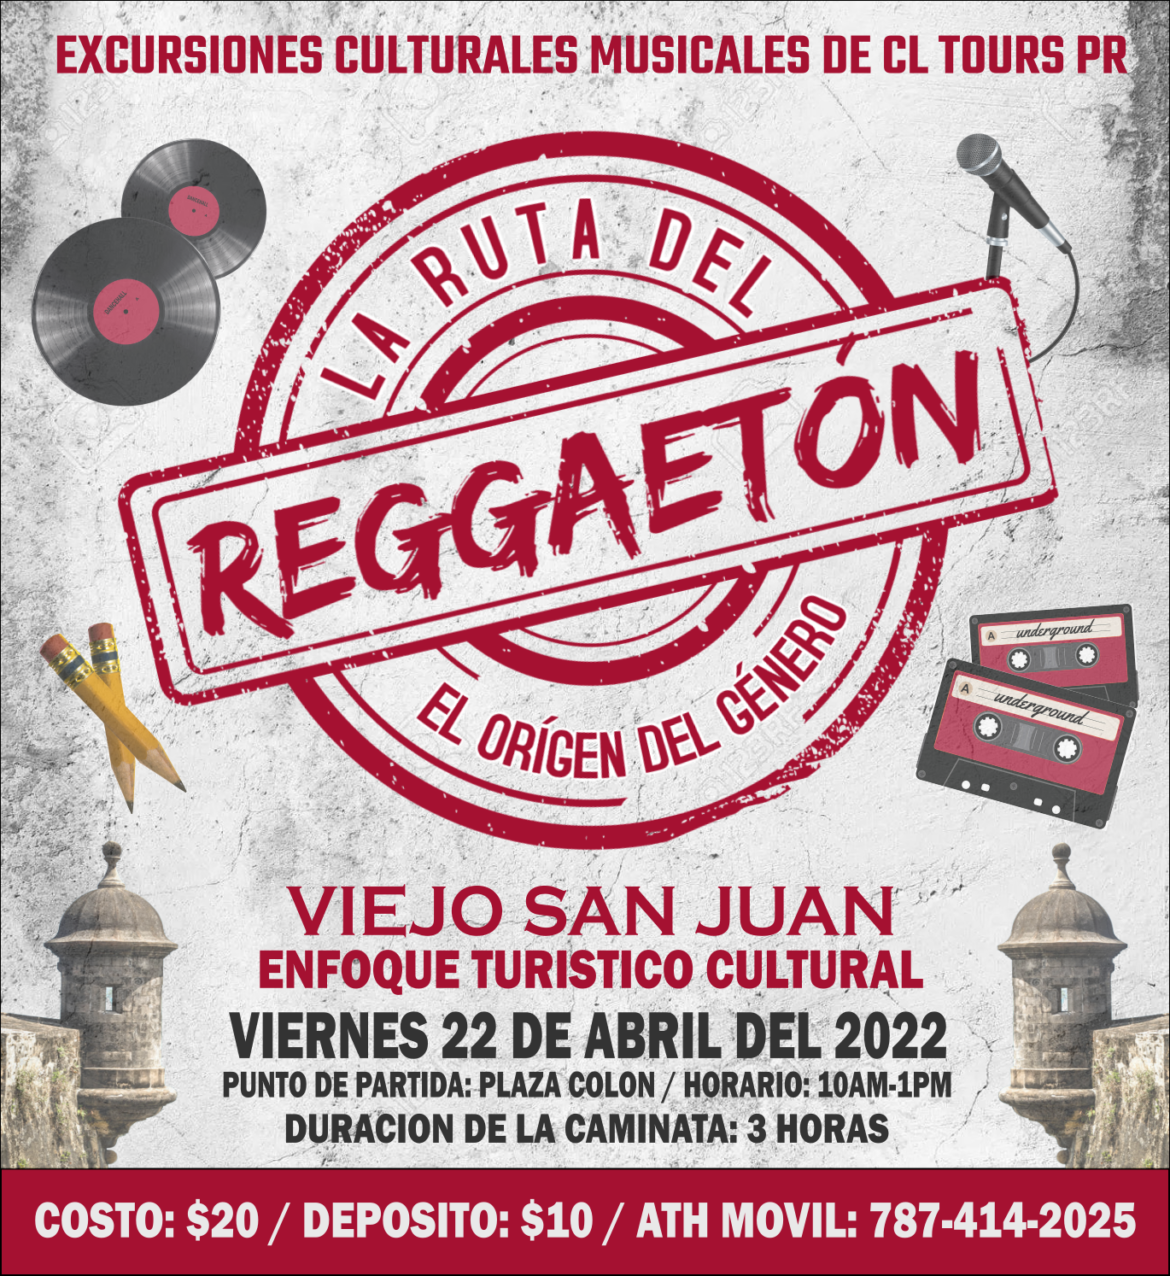 CL Tours PR le añade Reggaetón a sus Excursiones Culturales Musicales